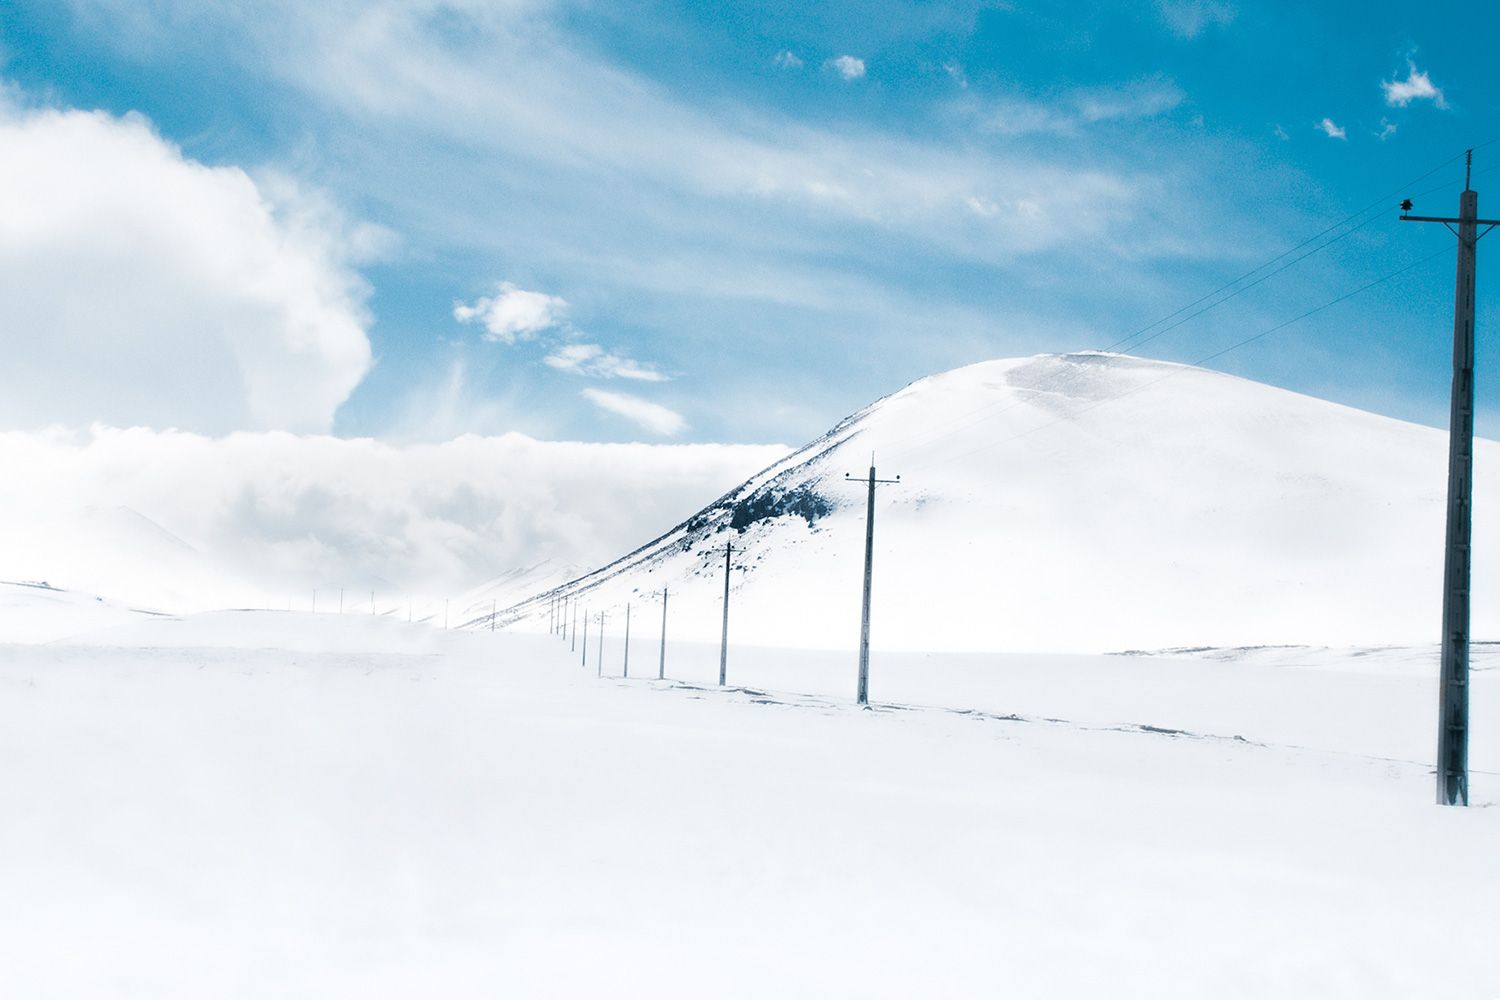 سفر به تبریز در زمستان؛ پیست اسکی سهند